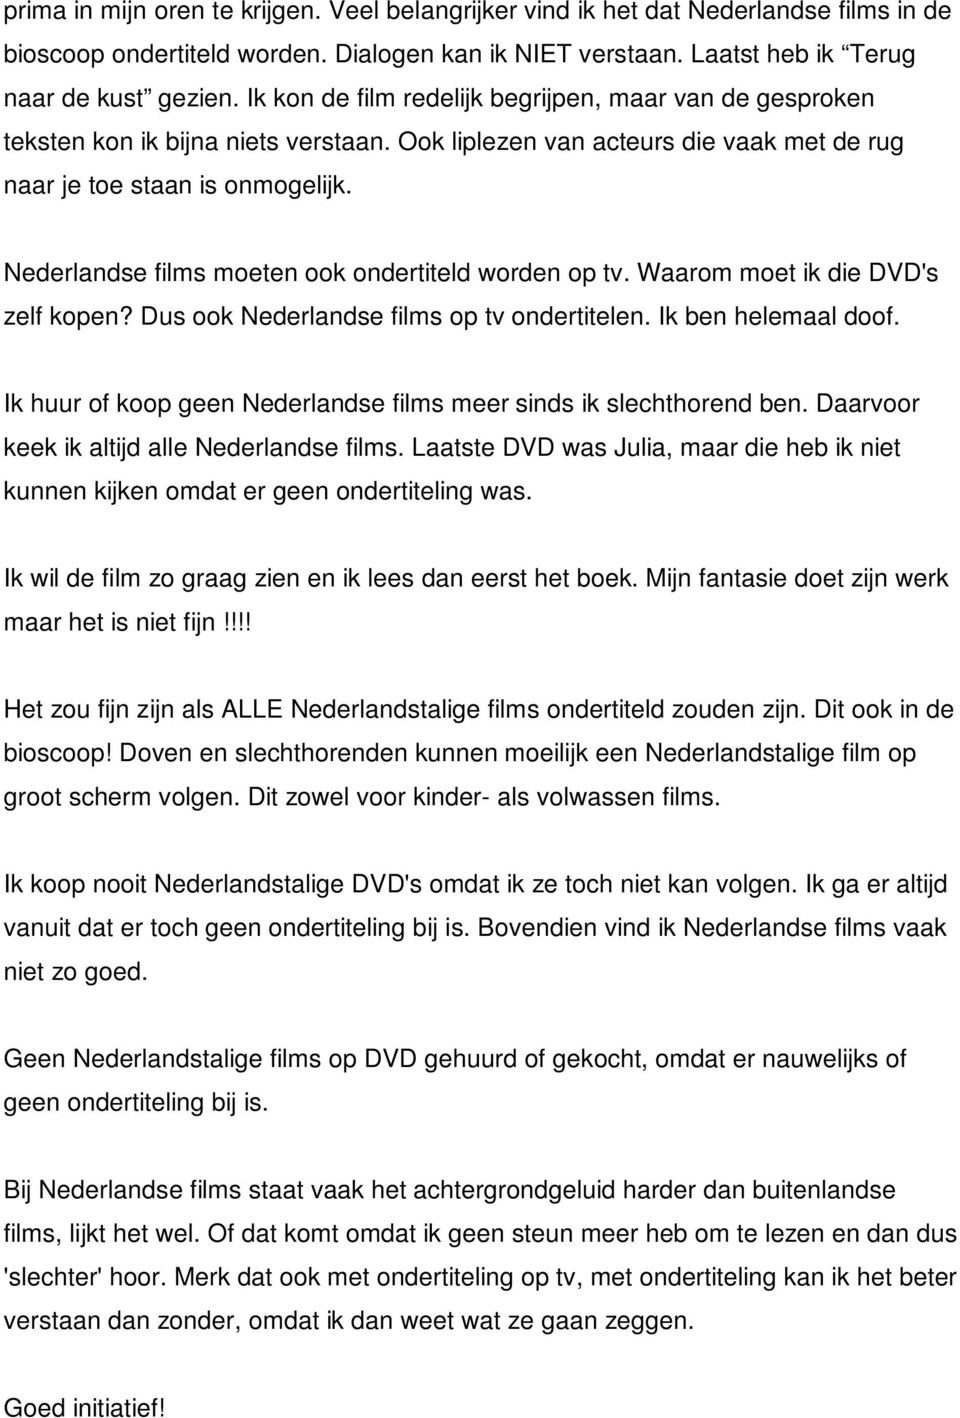 Nederlandse films moeten ook ondertiteld worden op tv. Waarom moet ik die DVD's zelf kopen? Dus ook Nederlandse films op tv ondertitelen. Ik ben helemaal doof.